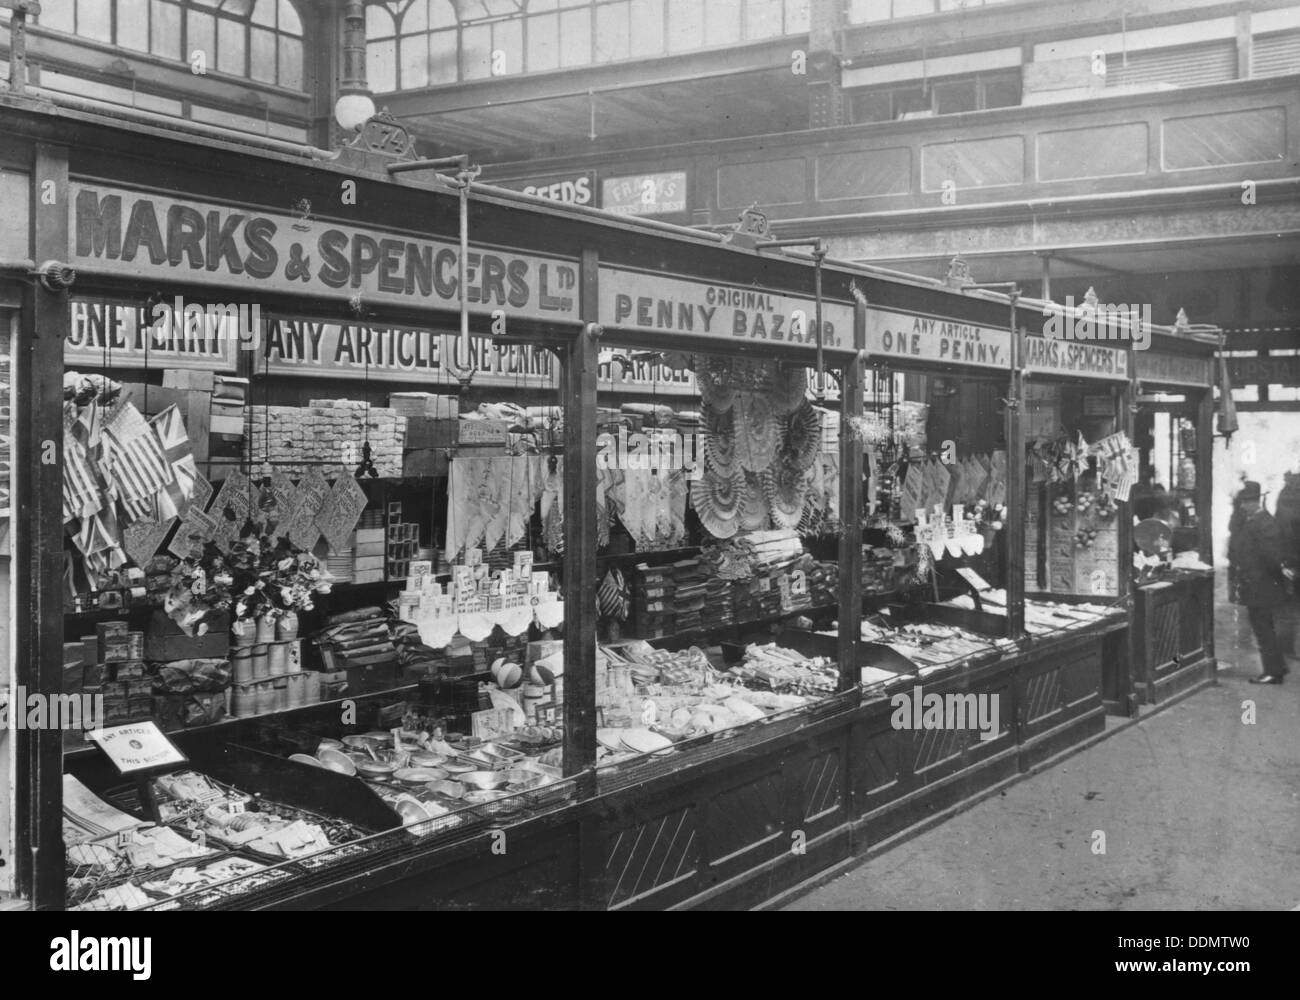 L'étal de Marks & Spencer dans le marché couvert, Cardiff, 1901. Artiste : Inconnu Banque D'Images